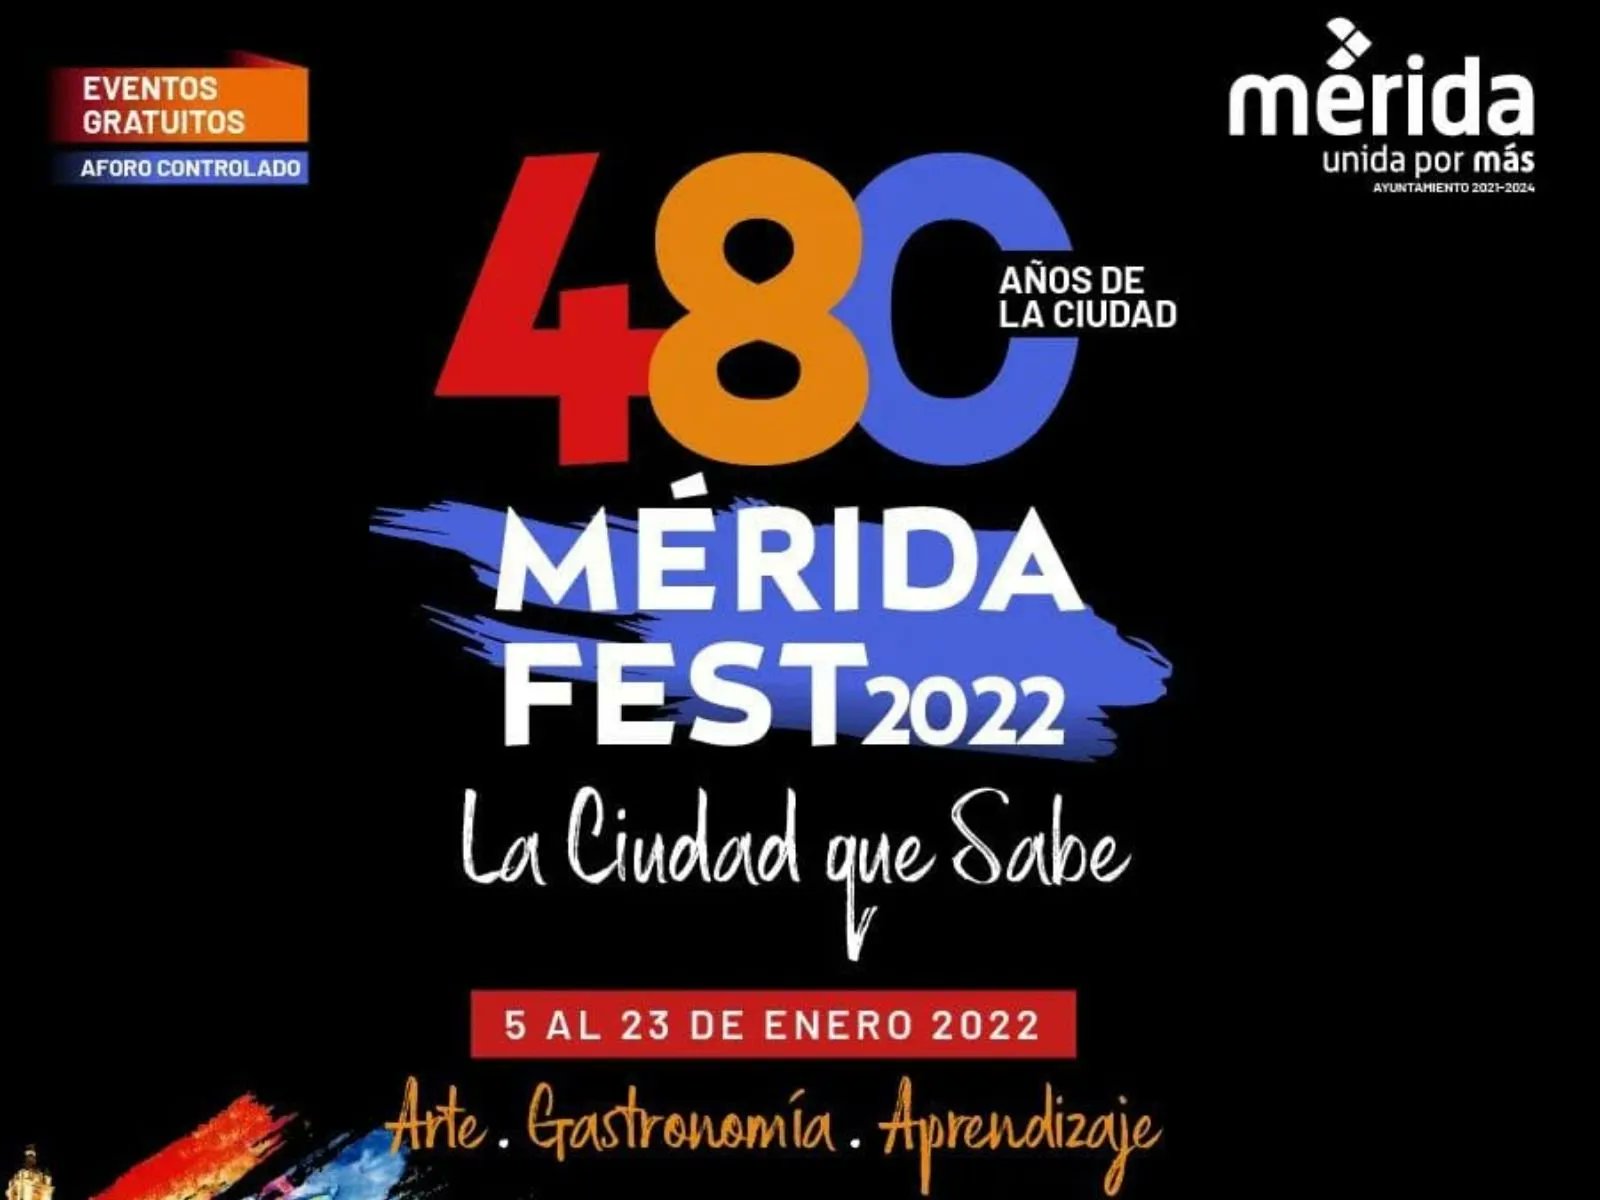 Mérida Fest, 480 años de la fundación de la ciudad